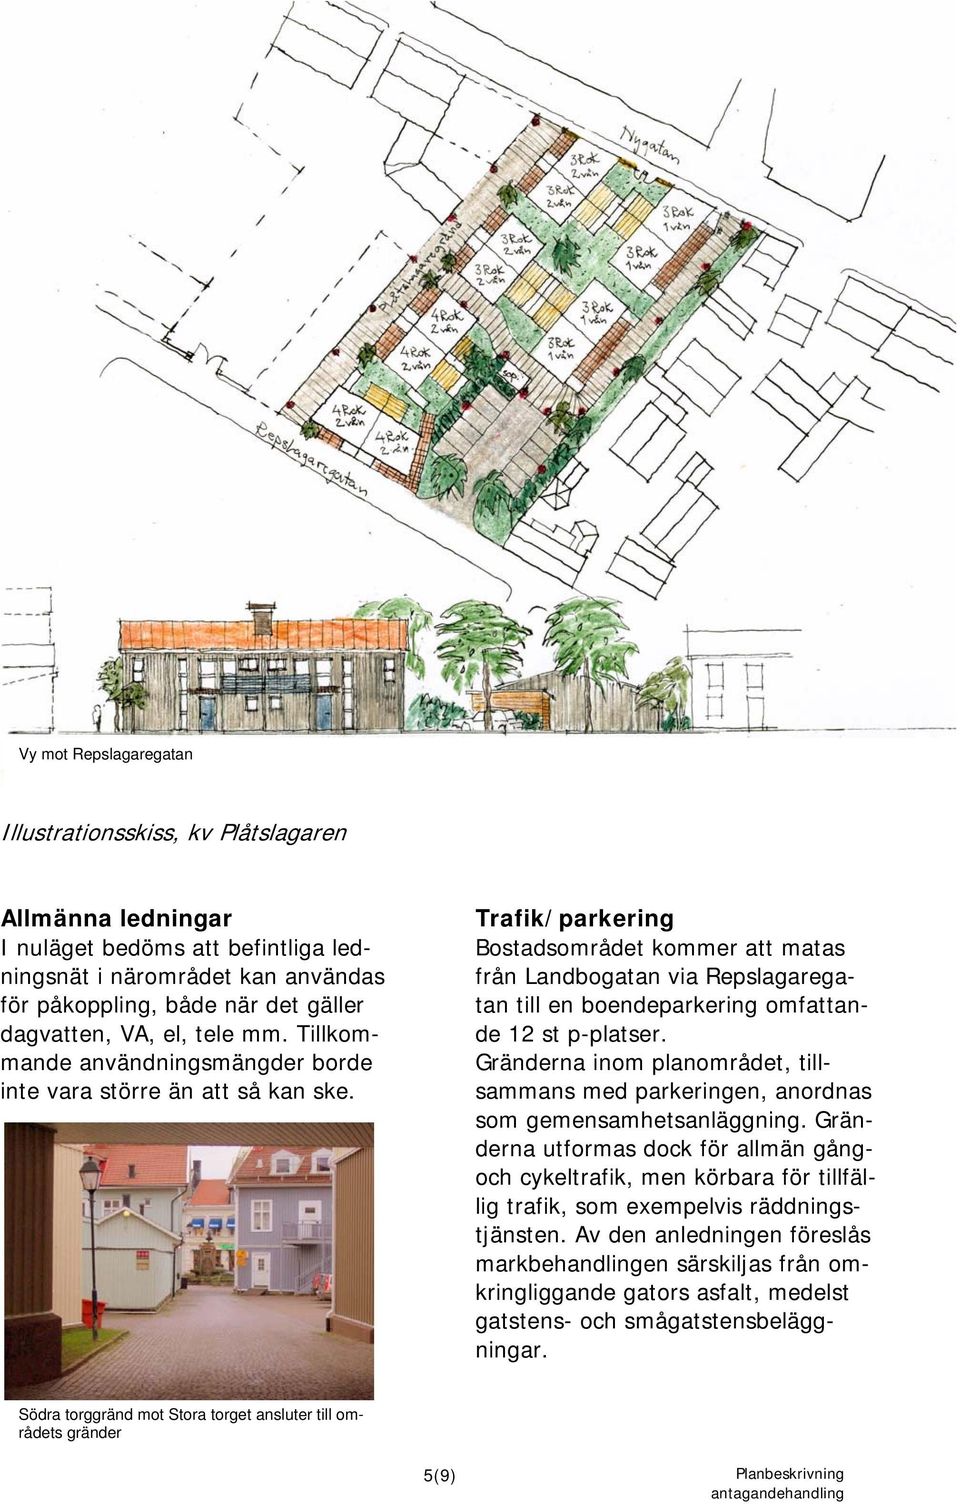 Trafik/parkering Bostadsområdet kommer att matas från Landbogatan via Repslagaregatan till en boendeparkering omfattande 12 st p-platser.